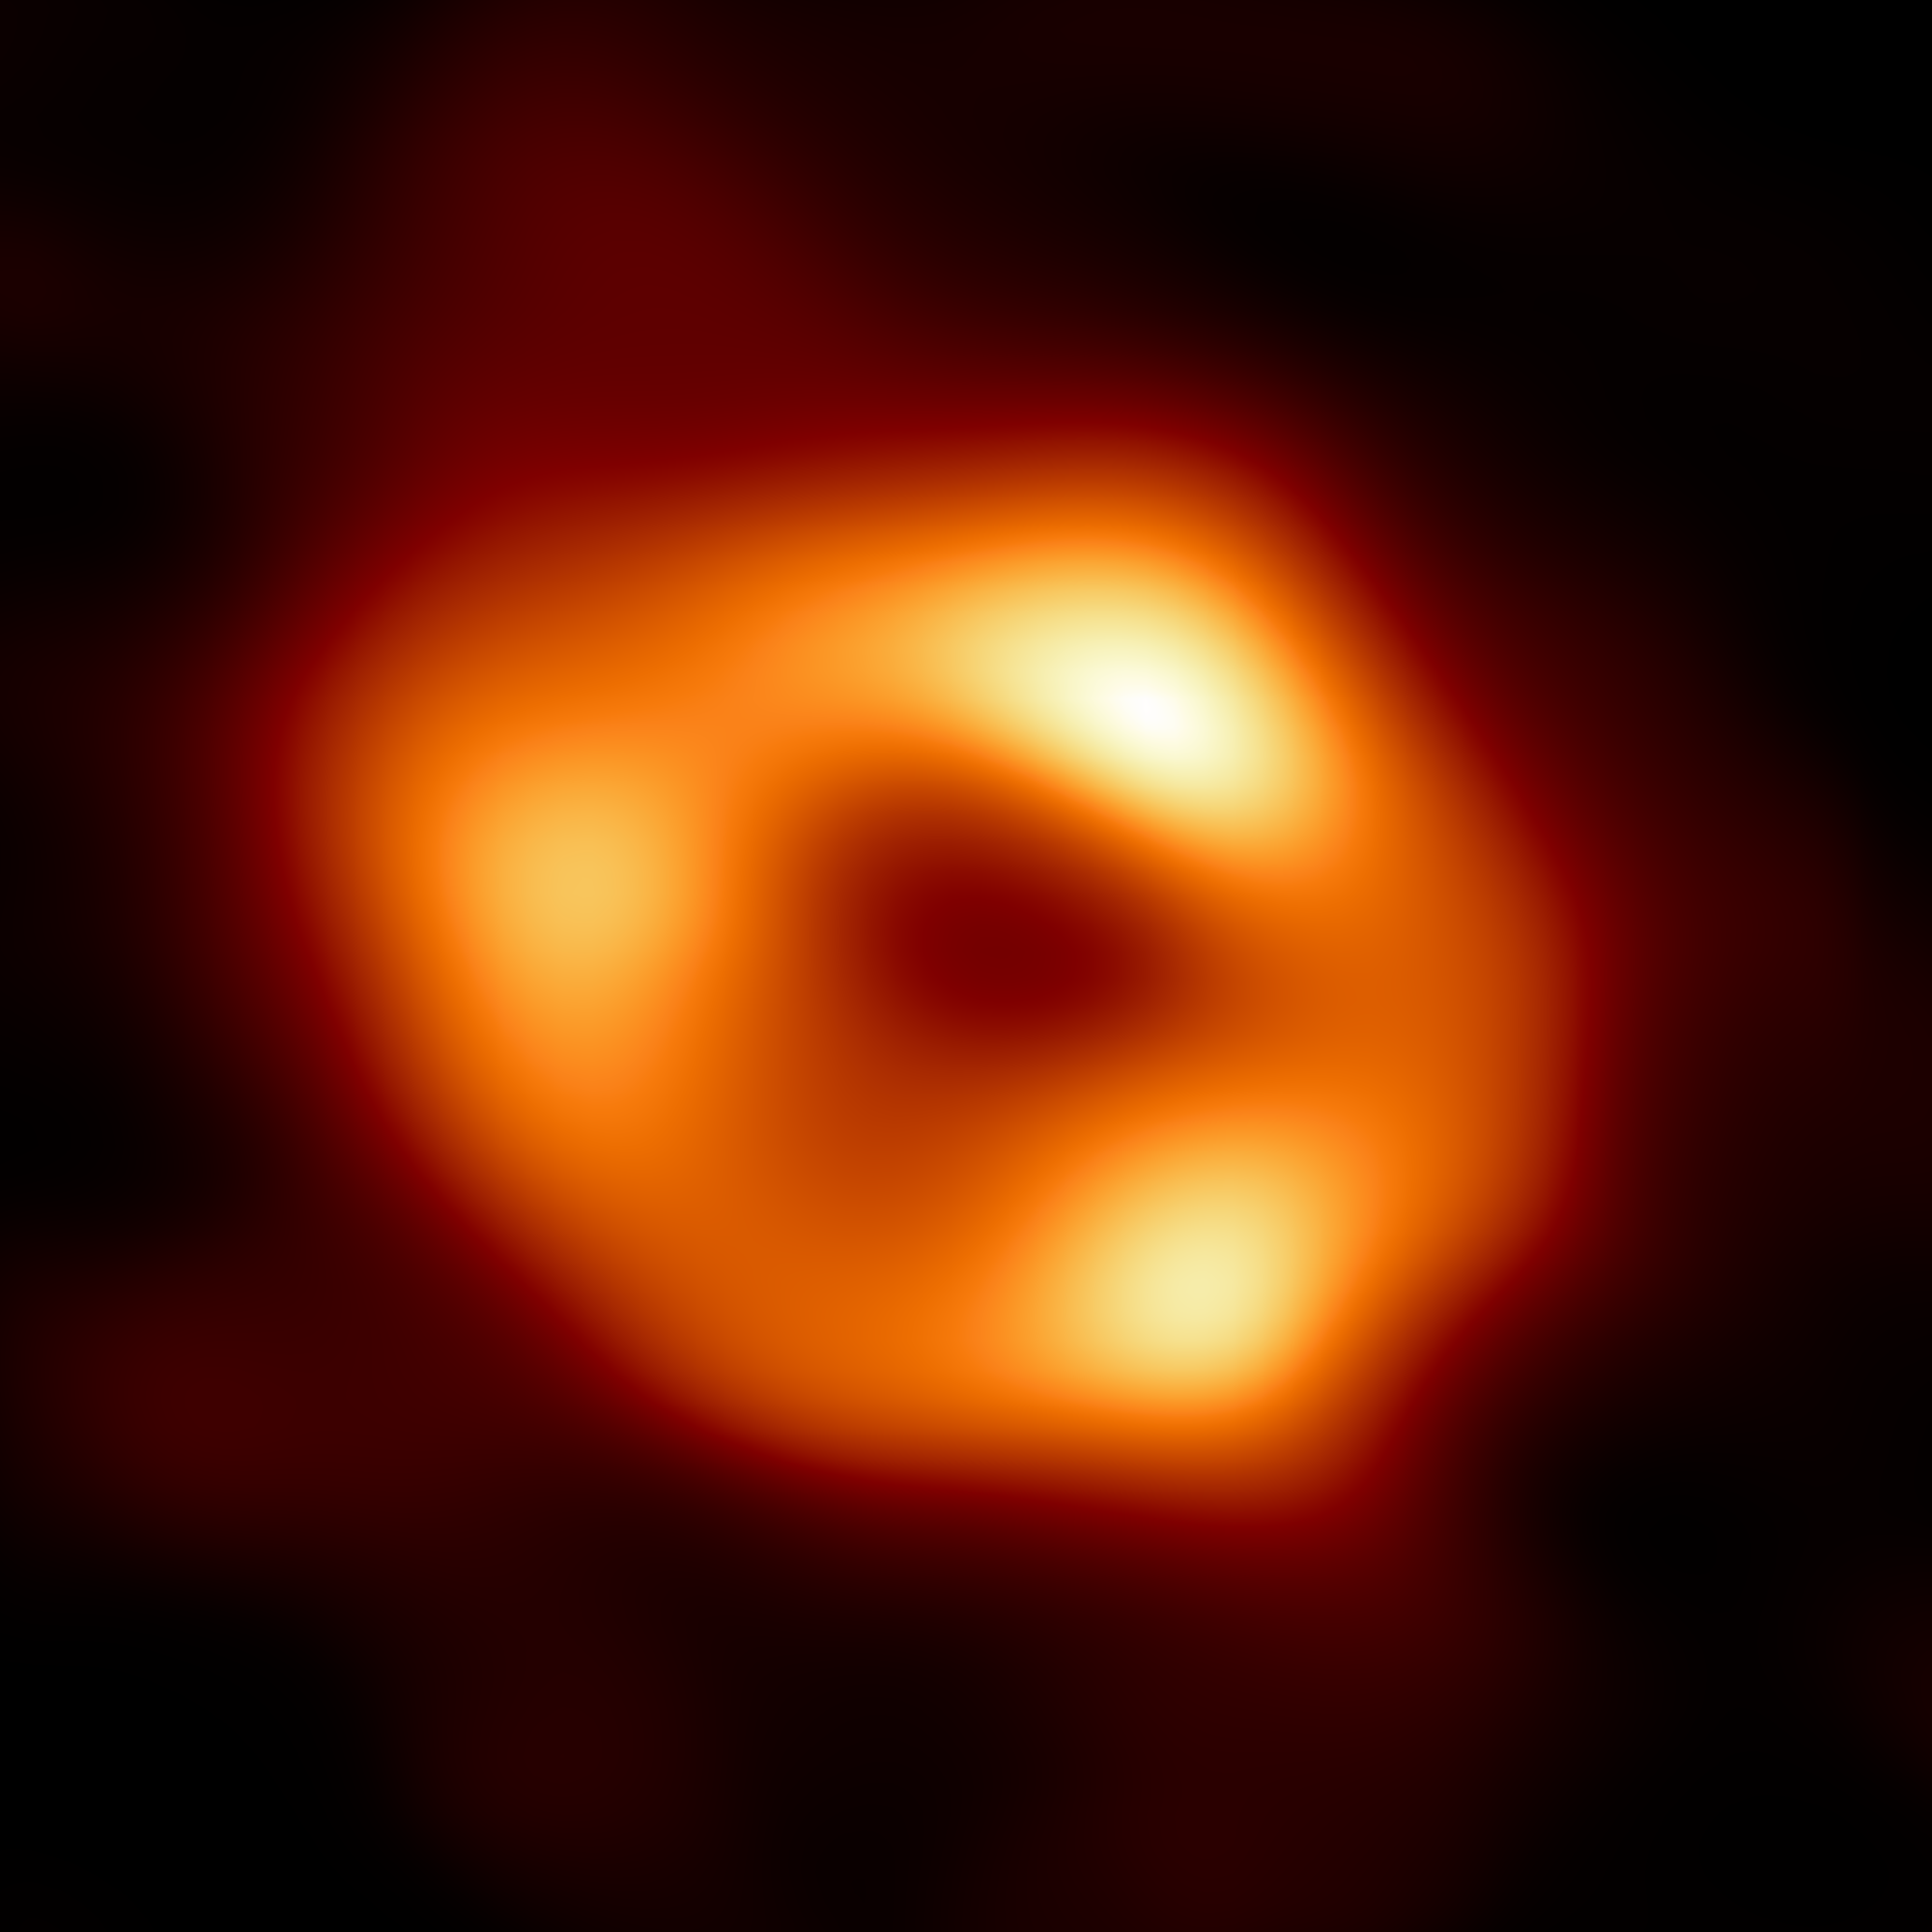 Первое изображение сверхмассивной черной дыры в центре Млечного Пути — Стрелец А*. Кредит: ЕКА